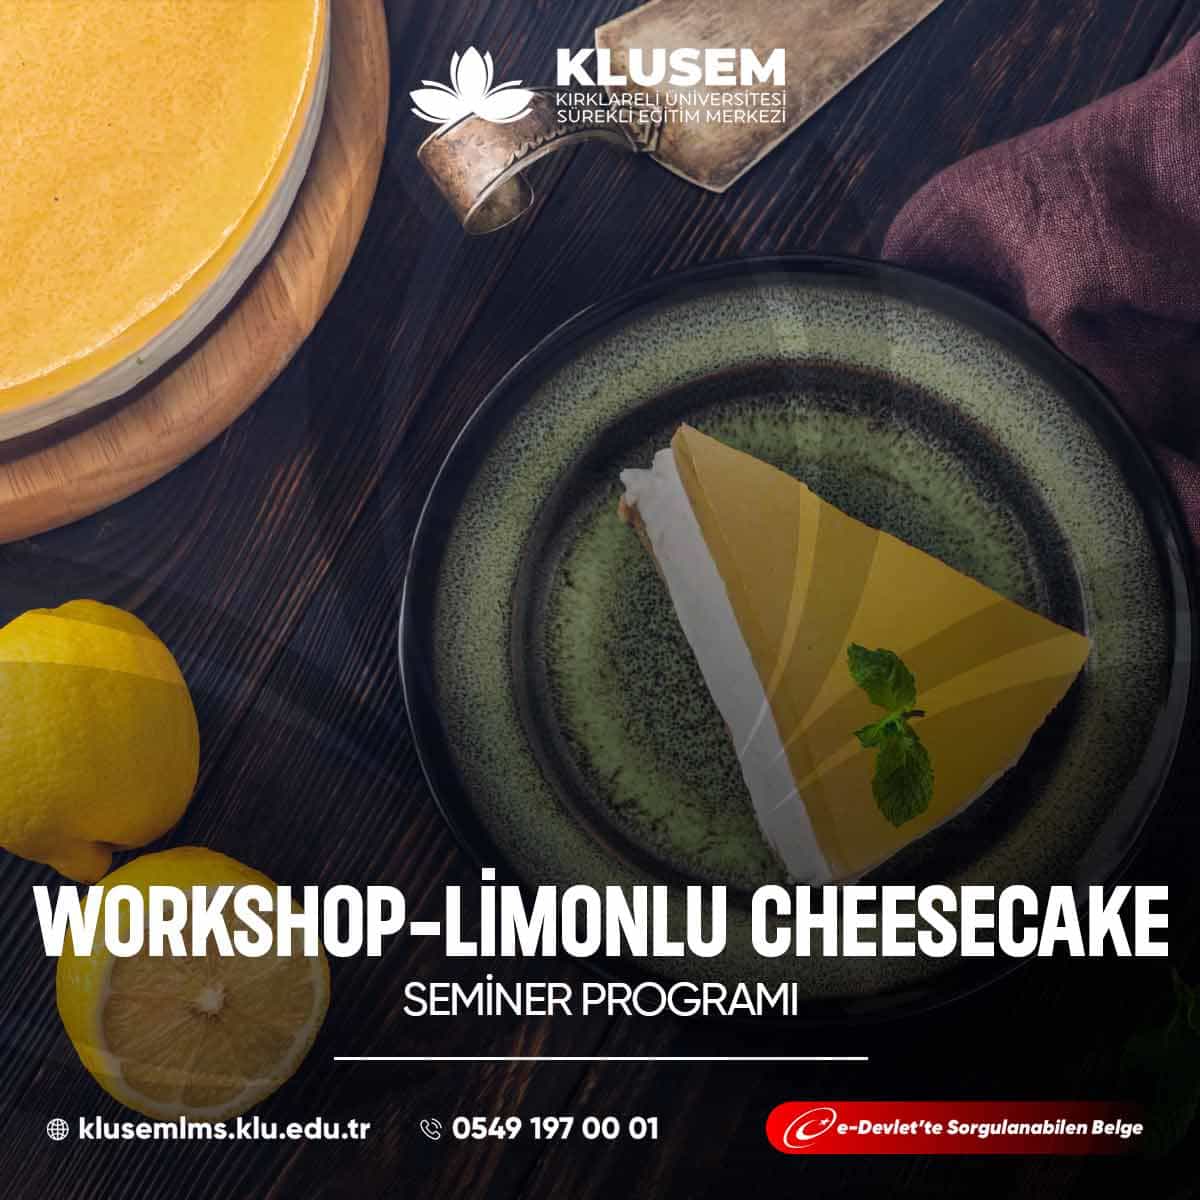 "Limonlu Cheesecake Workshop," katılımcılara nefis bir tatlı olan limonlu cheesecake yapmayı öğrenme fırsatı sunar.